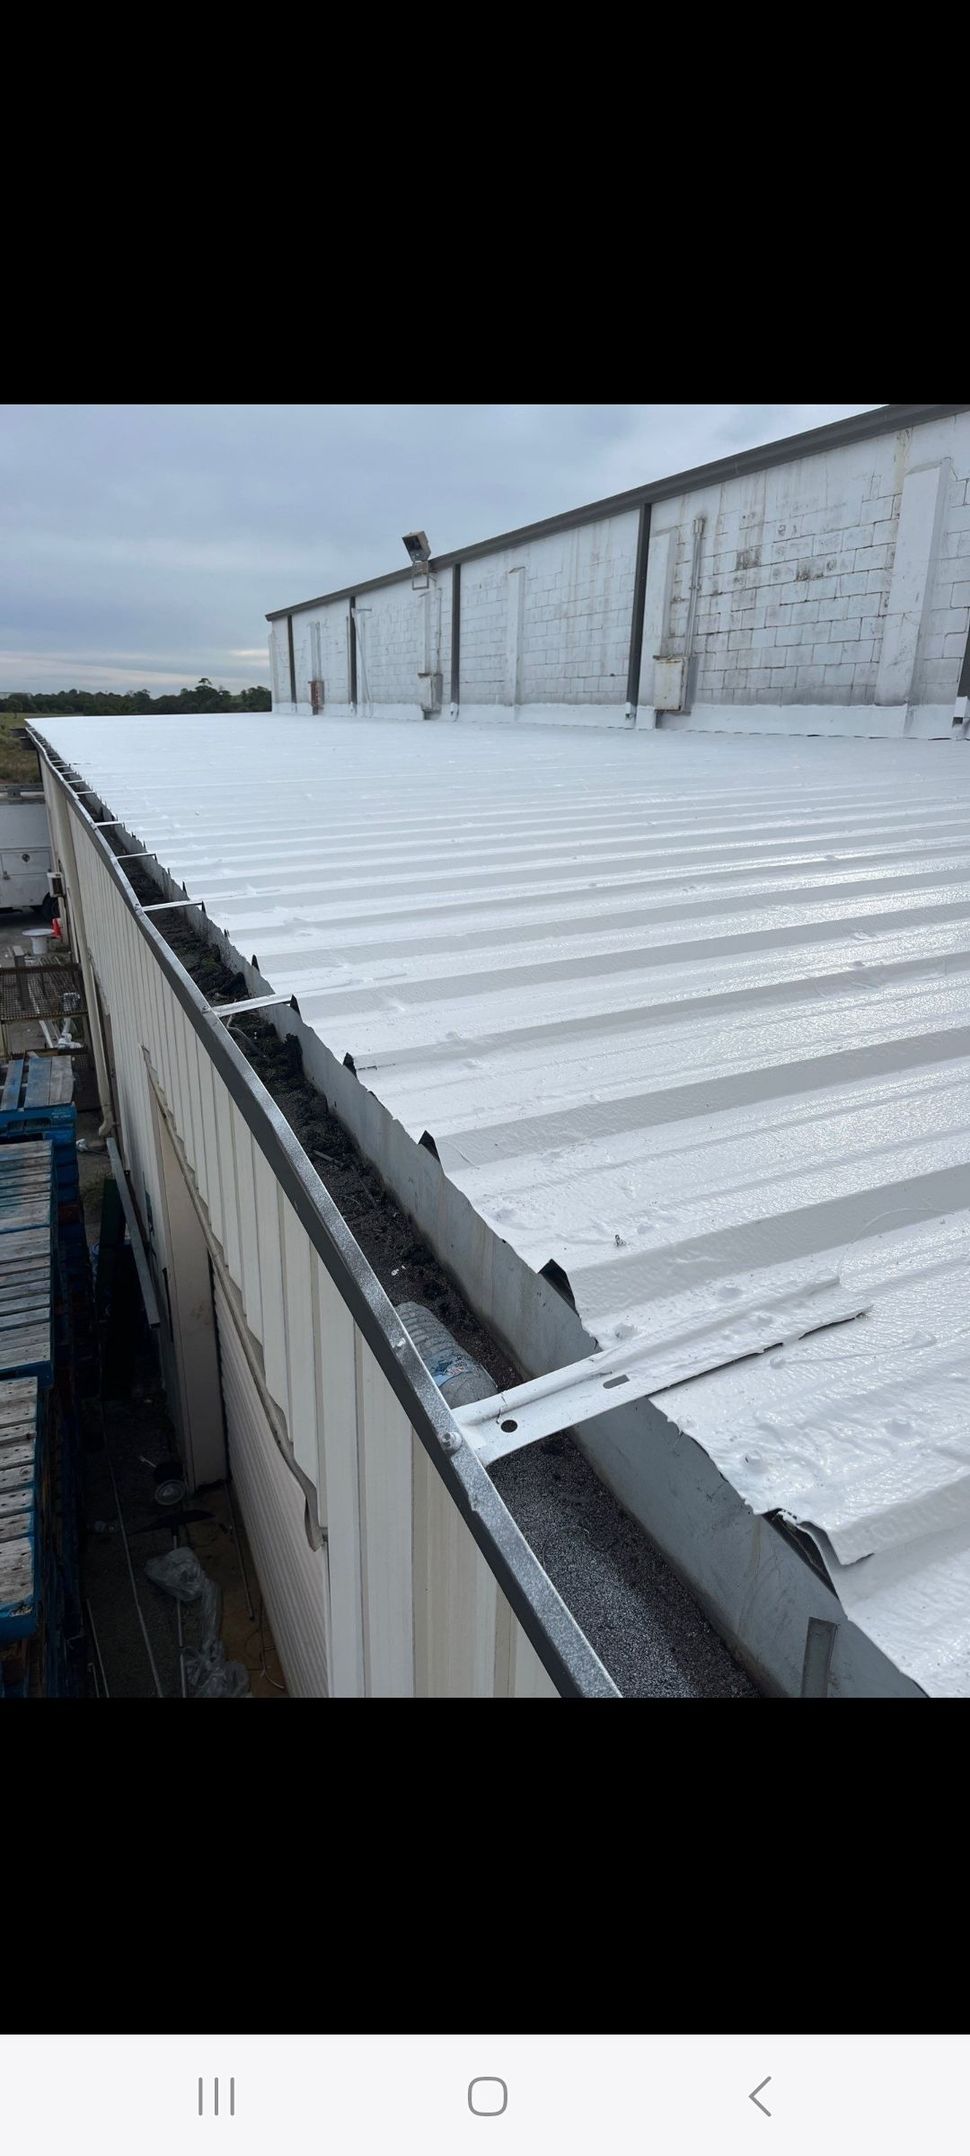 Kings Commercial Roofing LLC, Metal Roof Restoration - Roof repair